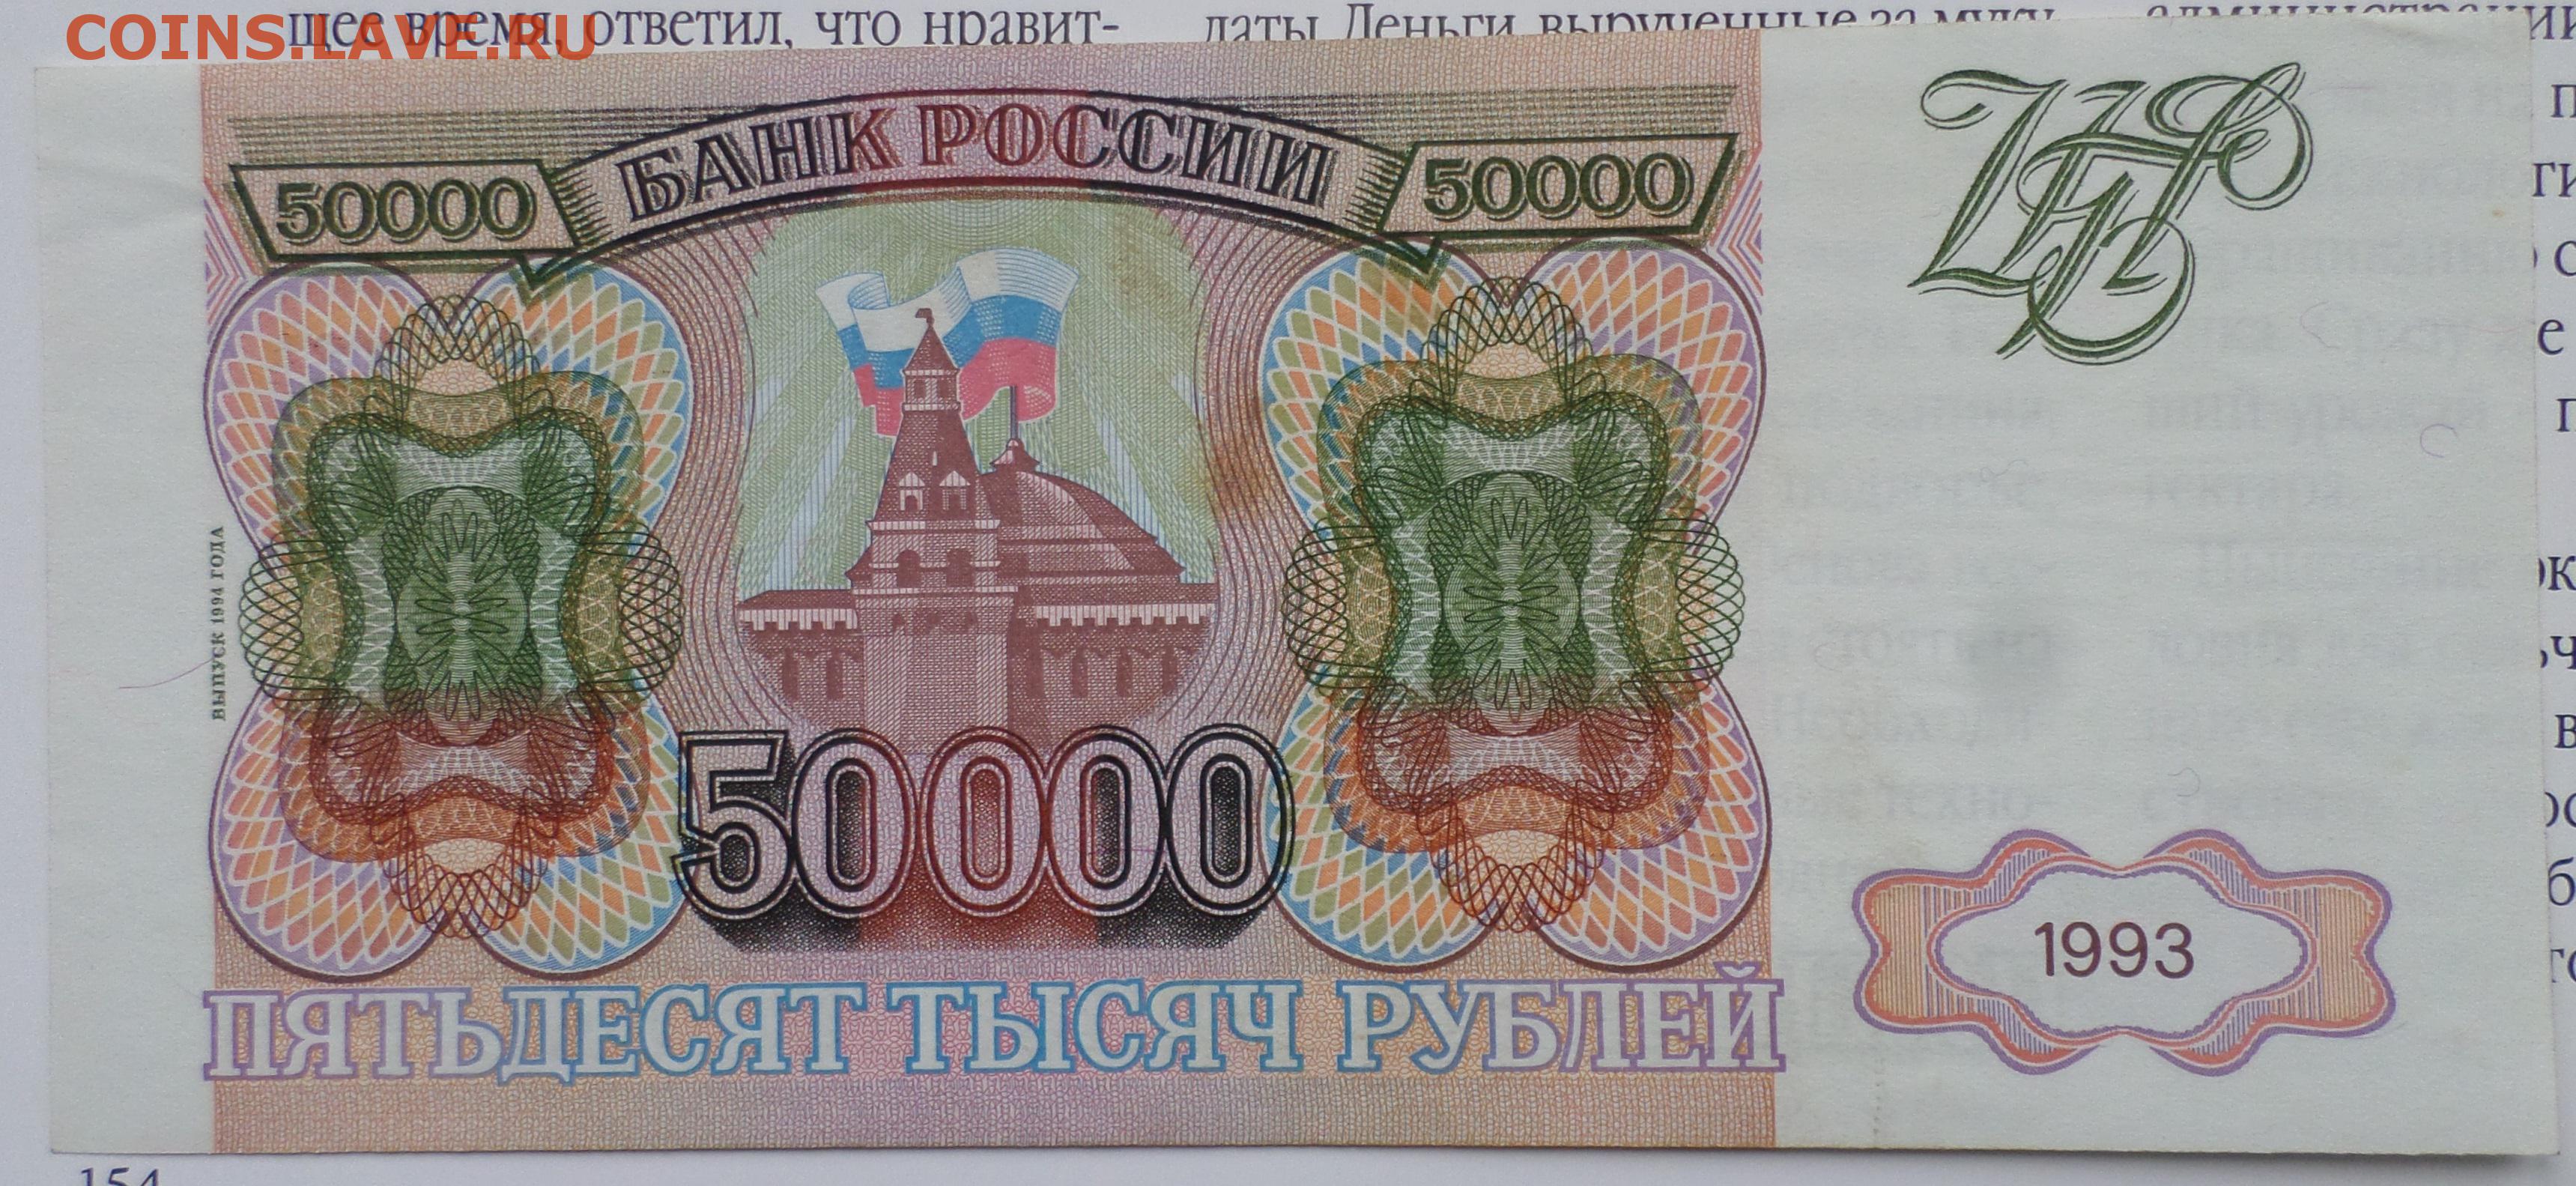 В тысяча пятьдесят первом году. Купюра 50000 рублей 1993 года. Банкнота 50000 рублей 1993. 50 000 Рублей купюра 1993 года. Купюра 50000 рублей.